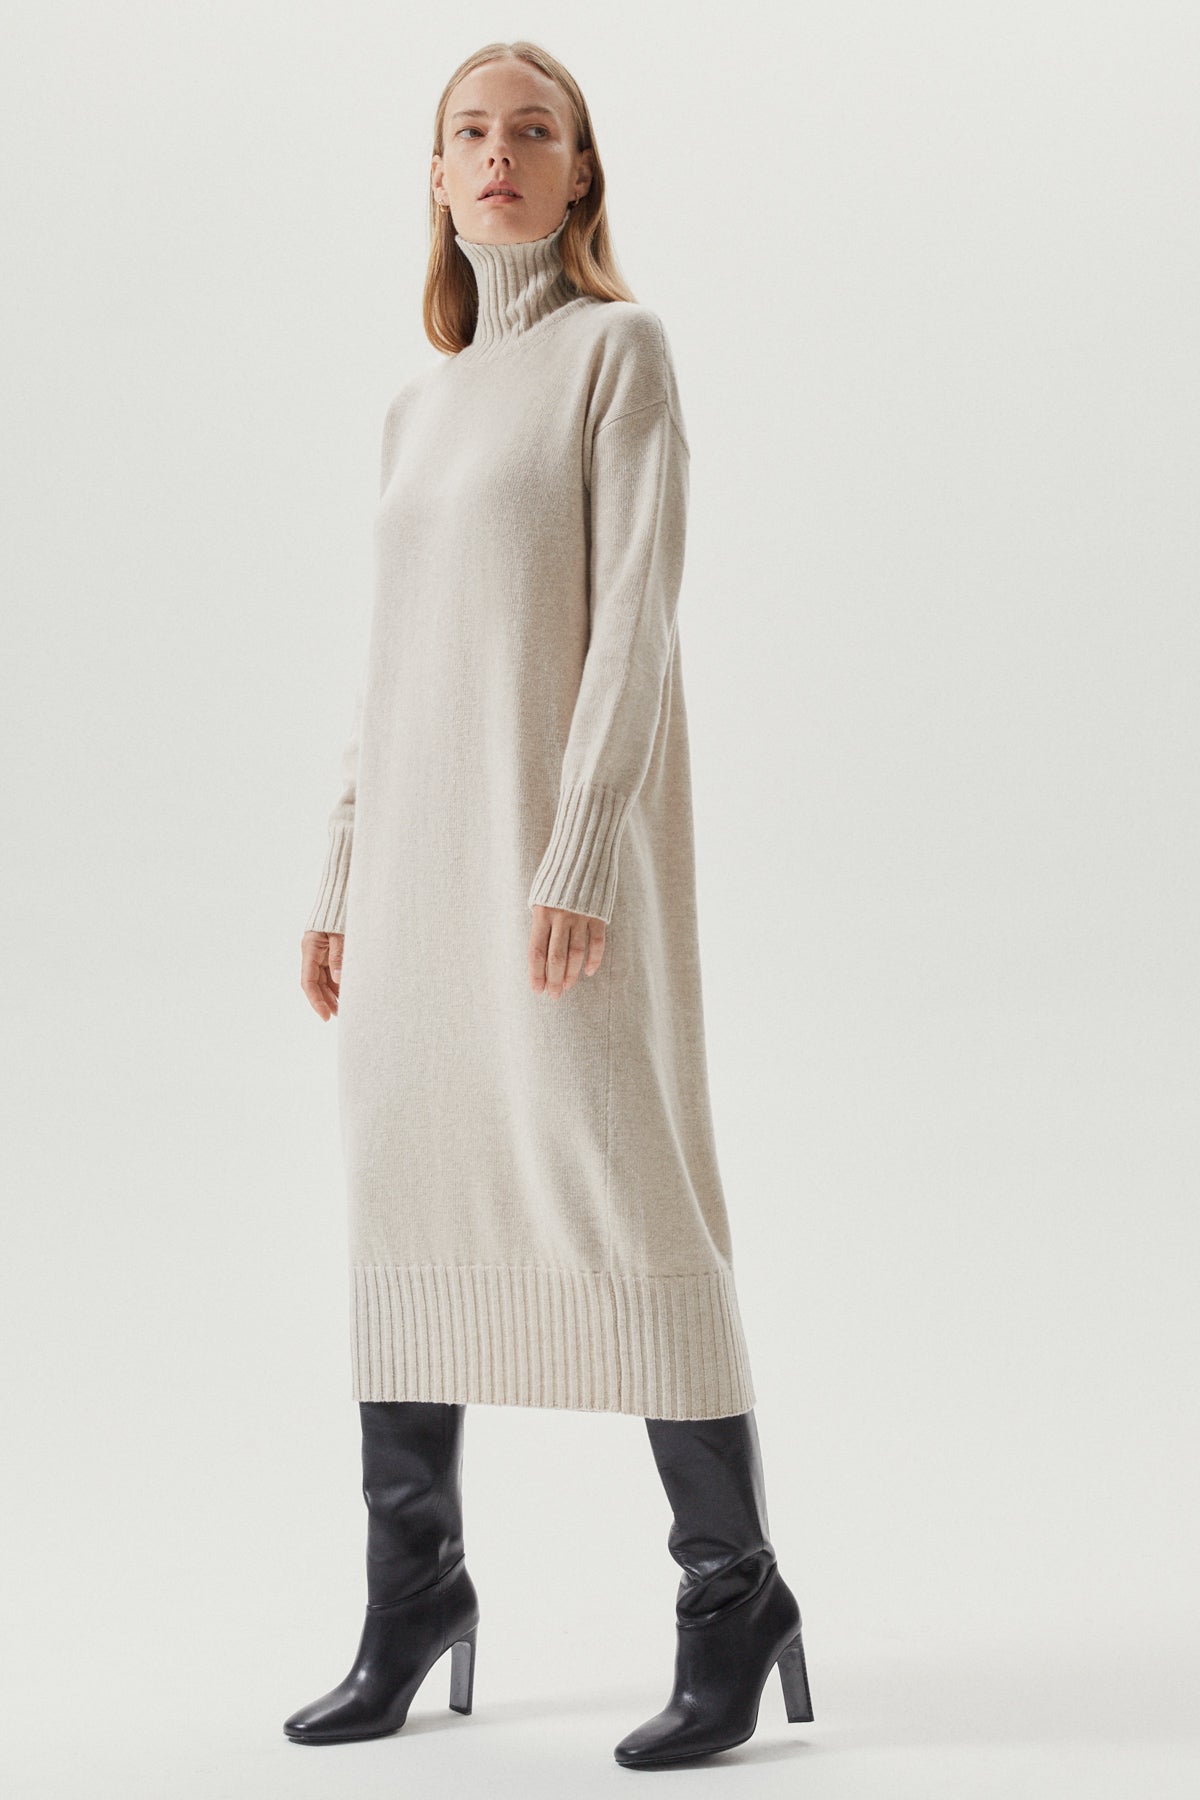 the woolen oversize dress ecru